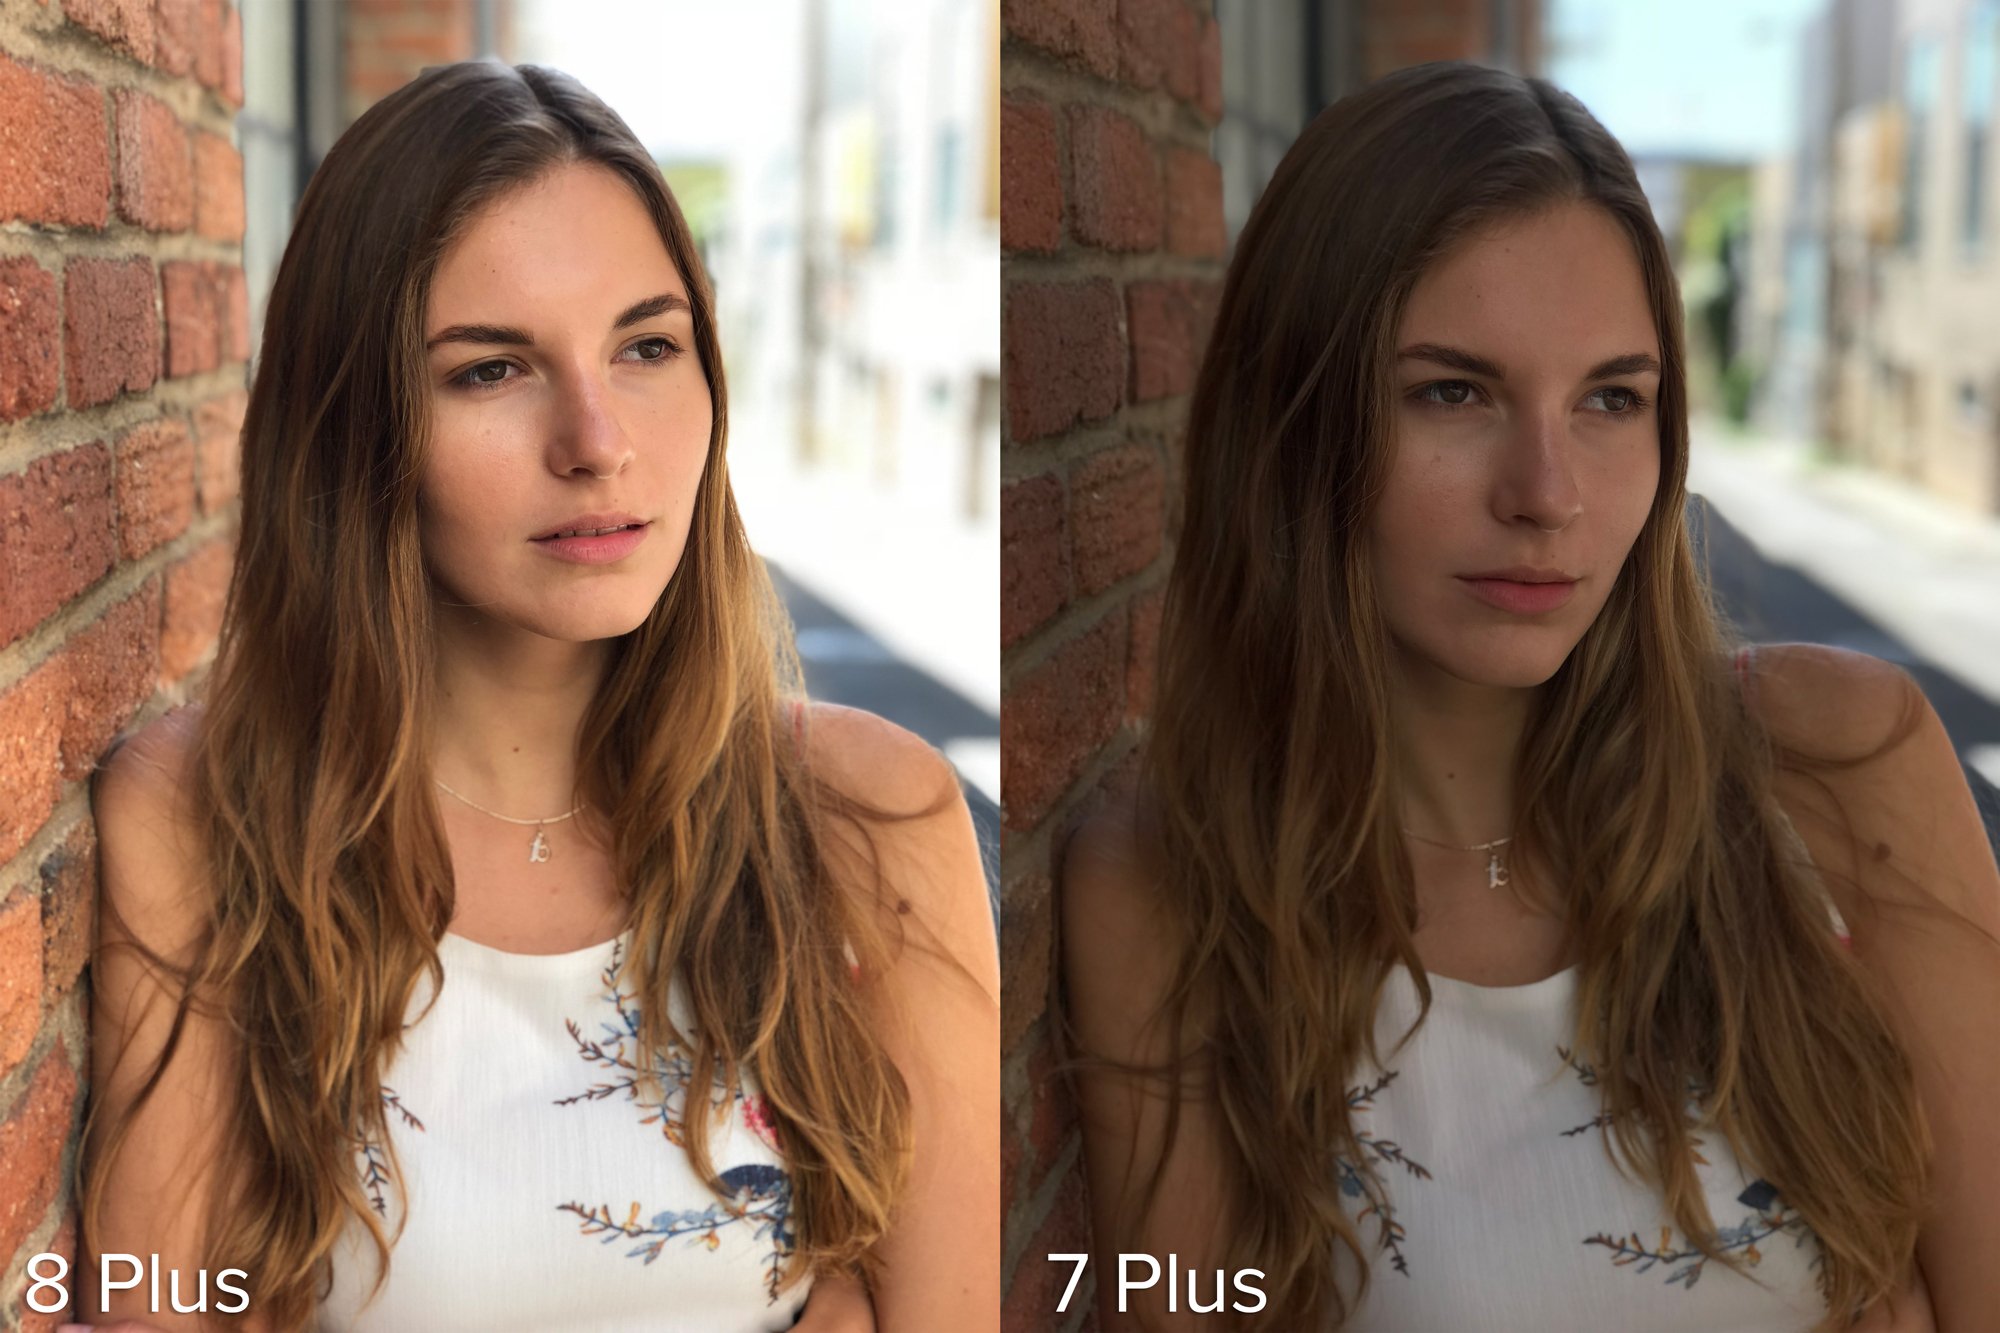 iphone 8 plus photos vs iphone 7 plus 17